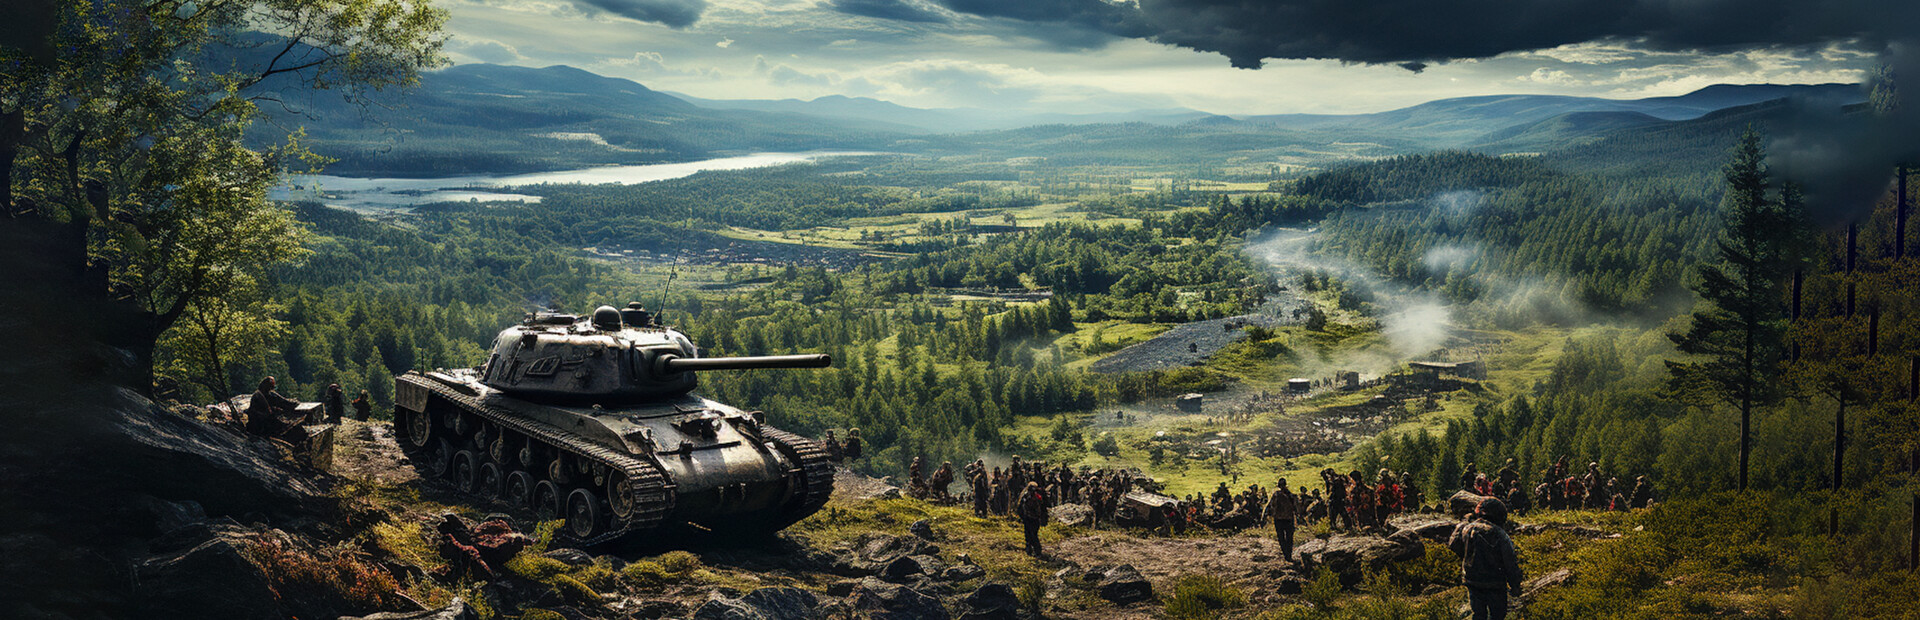 Battle Tanks: Legends of World War II cover image